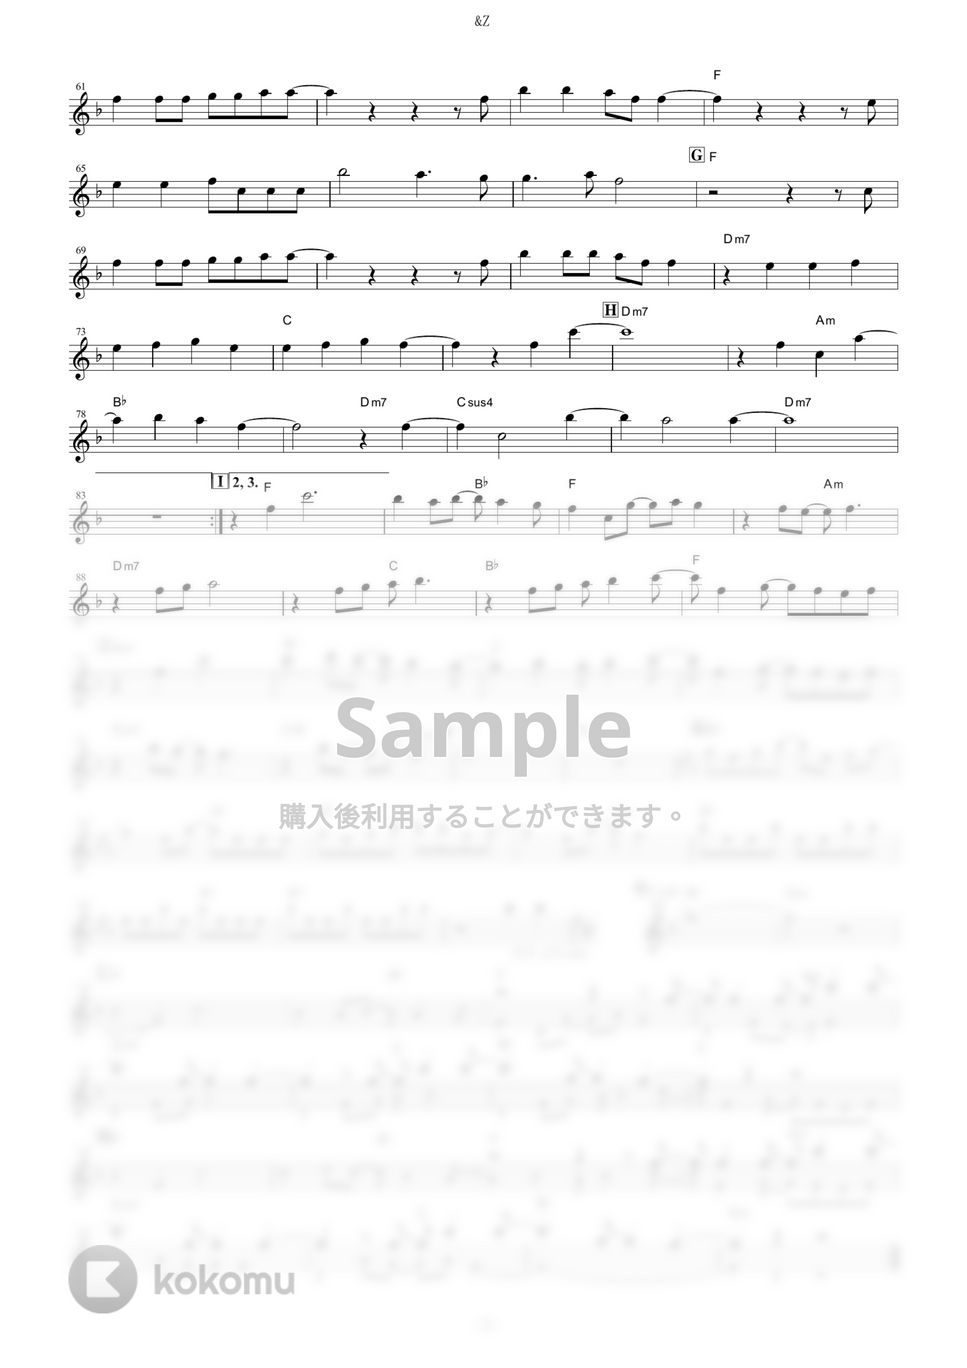 SawanoHiroyuki[nZk]:mizuki - &Z (『アルドノア・ゼロ』 / in Bb) by muta-sax